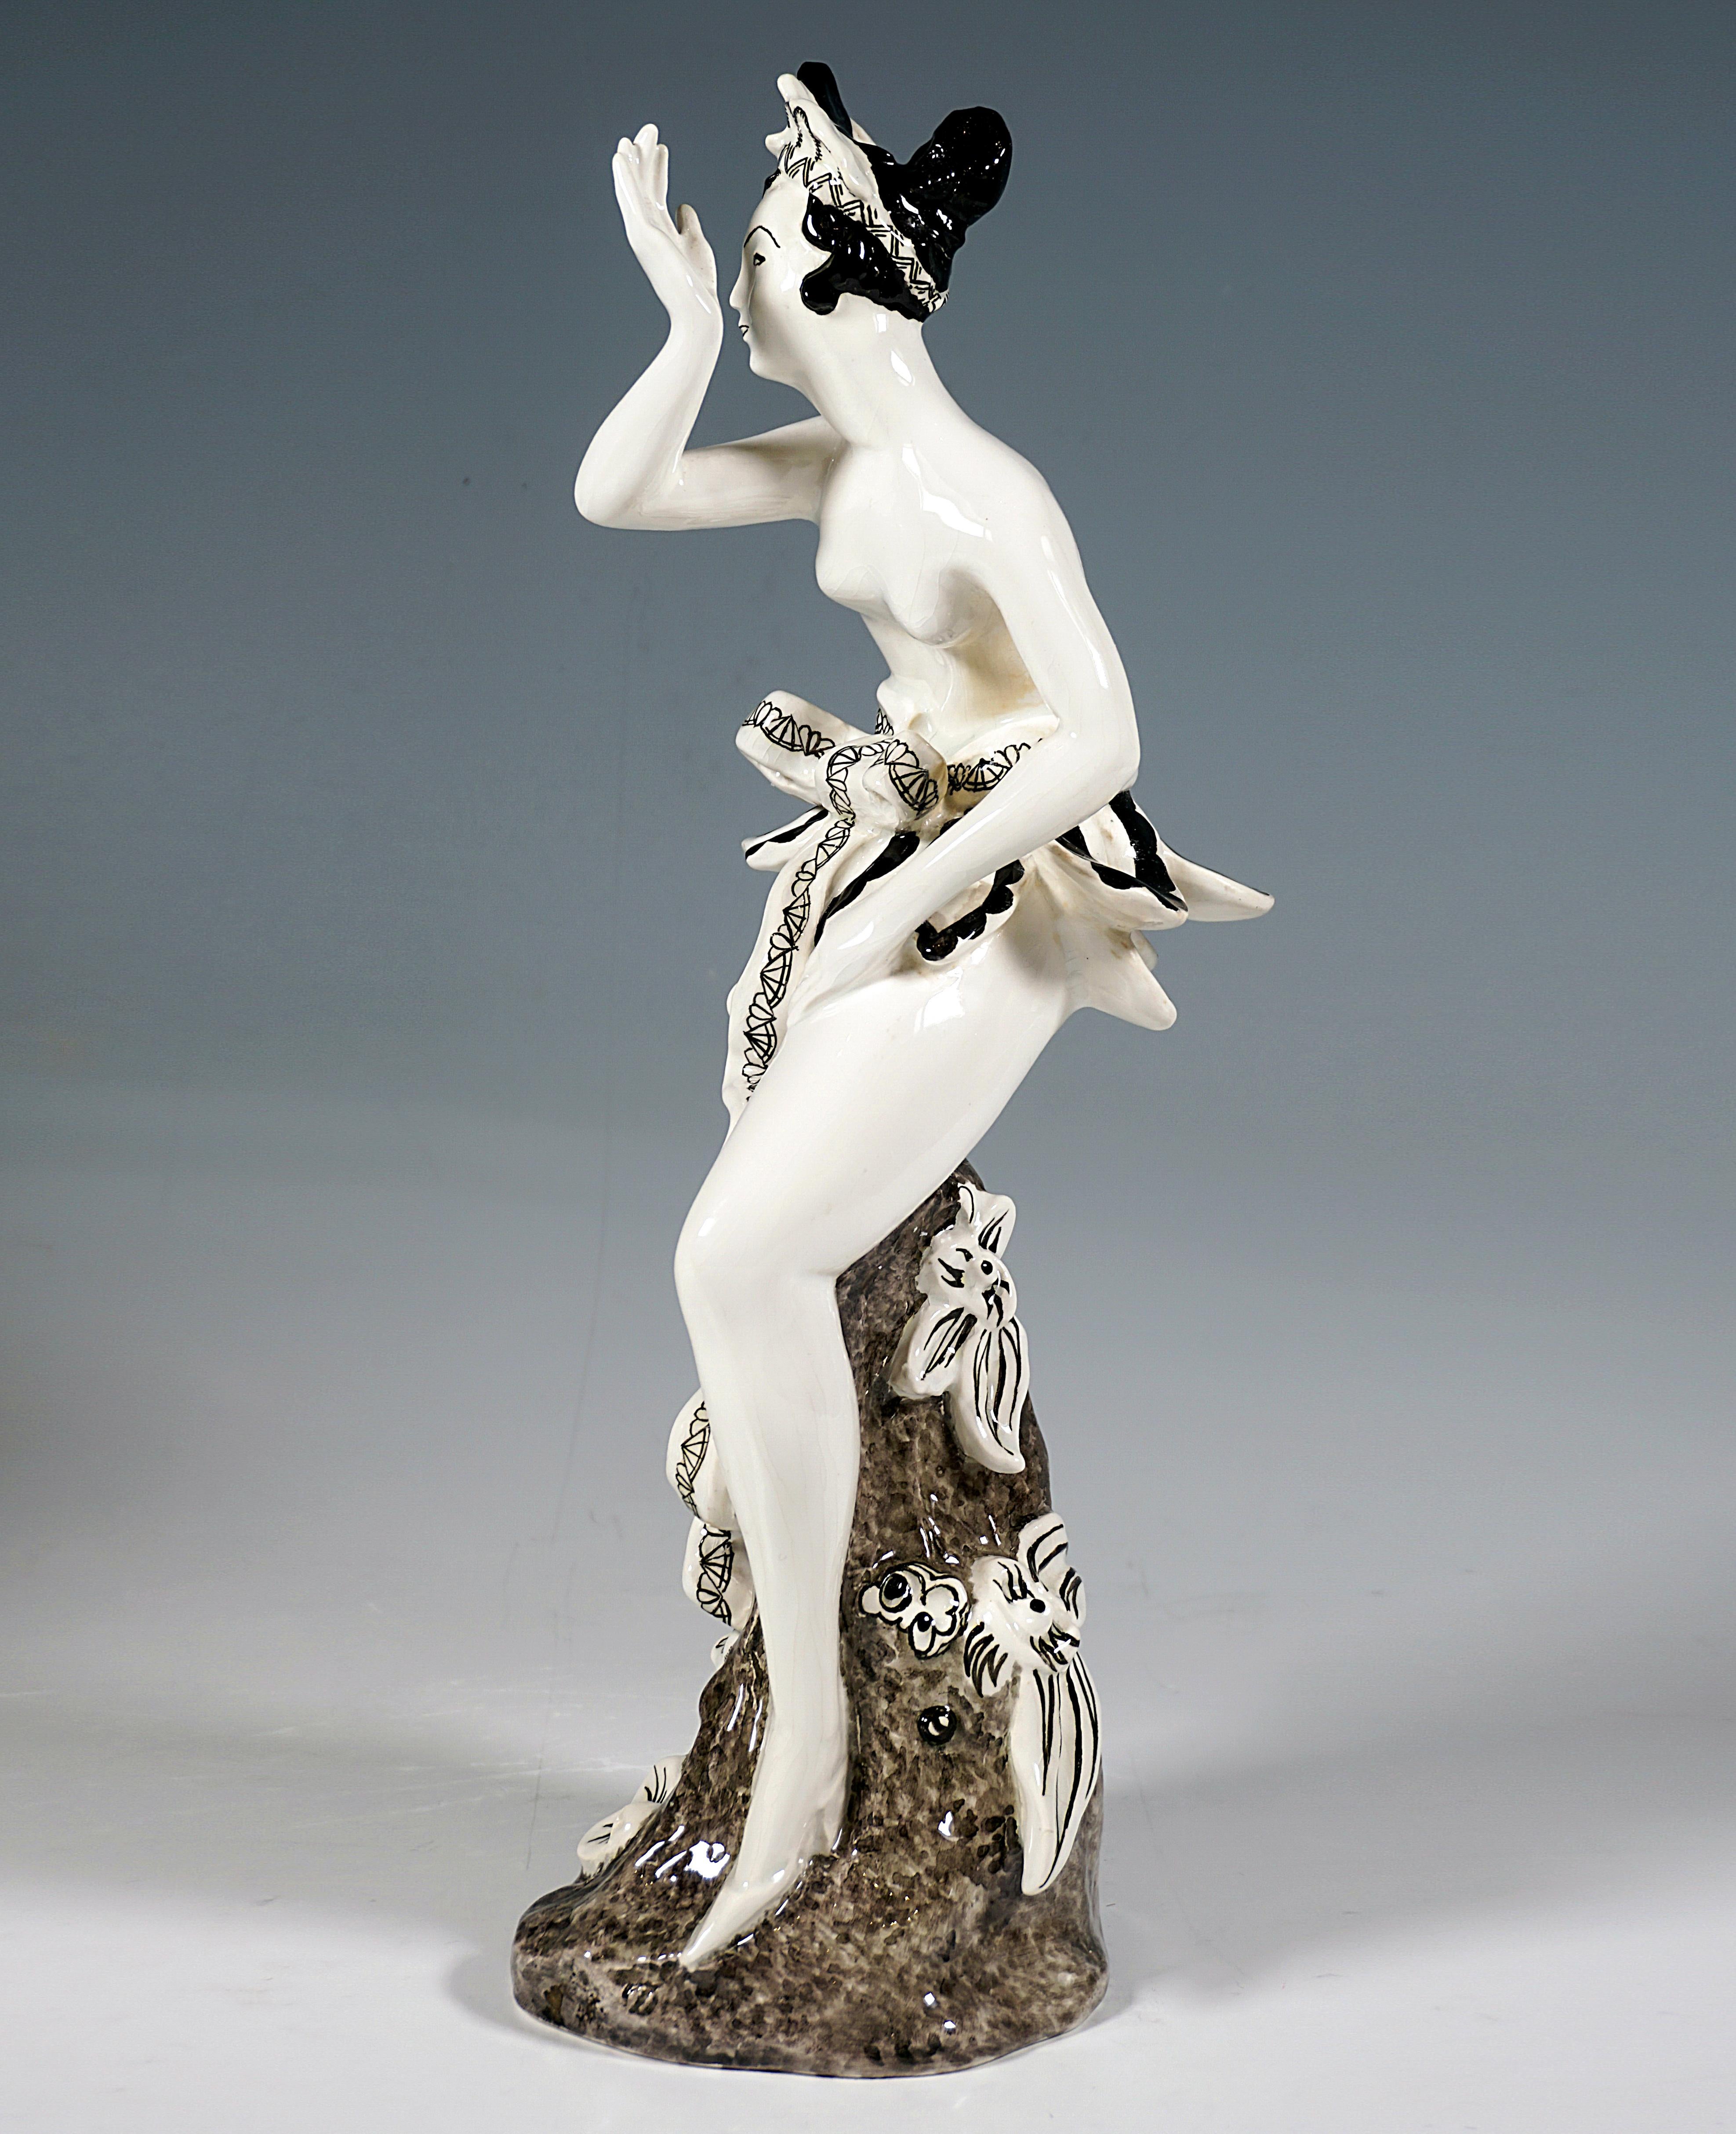 Beeindruckende Goldscheider Wiener Keramikfigur aus den 1920er Jahren:
Die junge Dame mit kunstvoll hochgestecktem Haar und Kopfschmuck trägt nur einen exotisch anmutenden kurzen Rock in der Art einer Reihe abstehender Blütenblätter, der mit einer